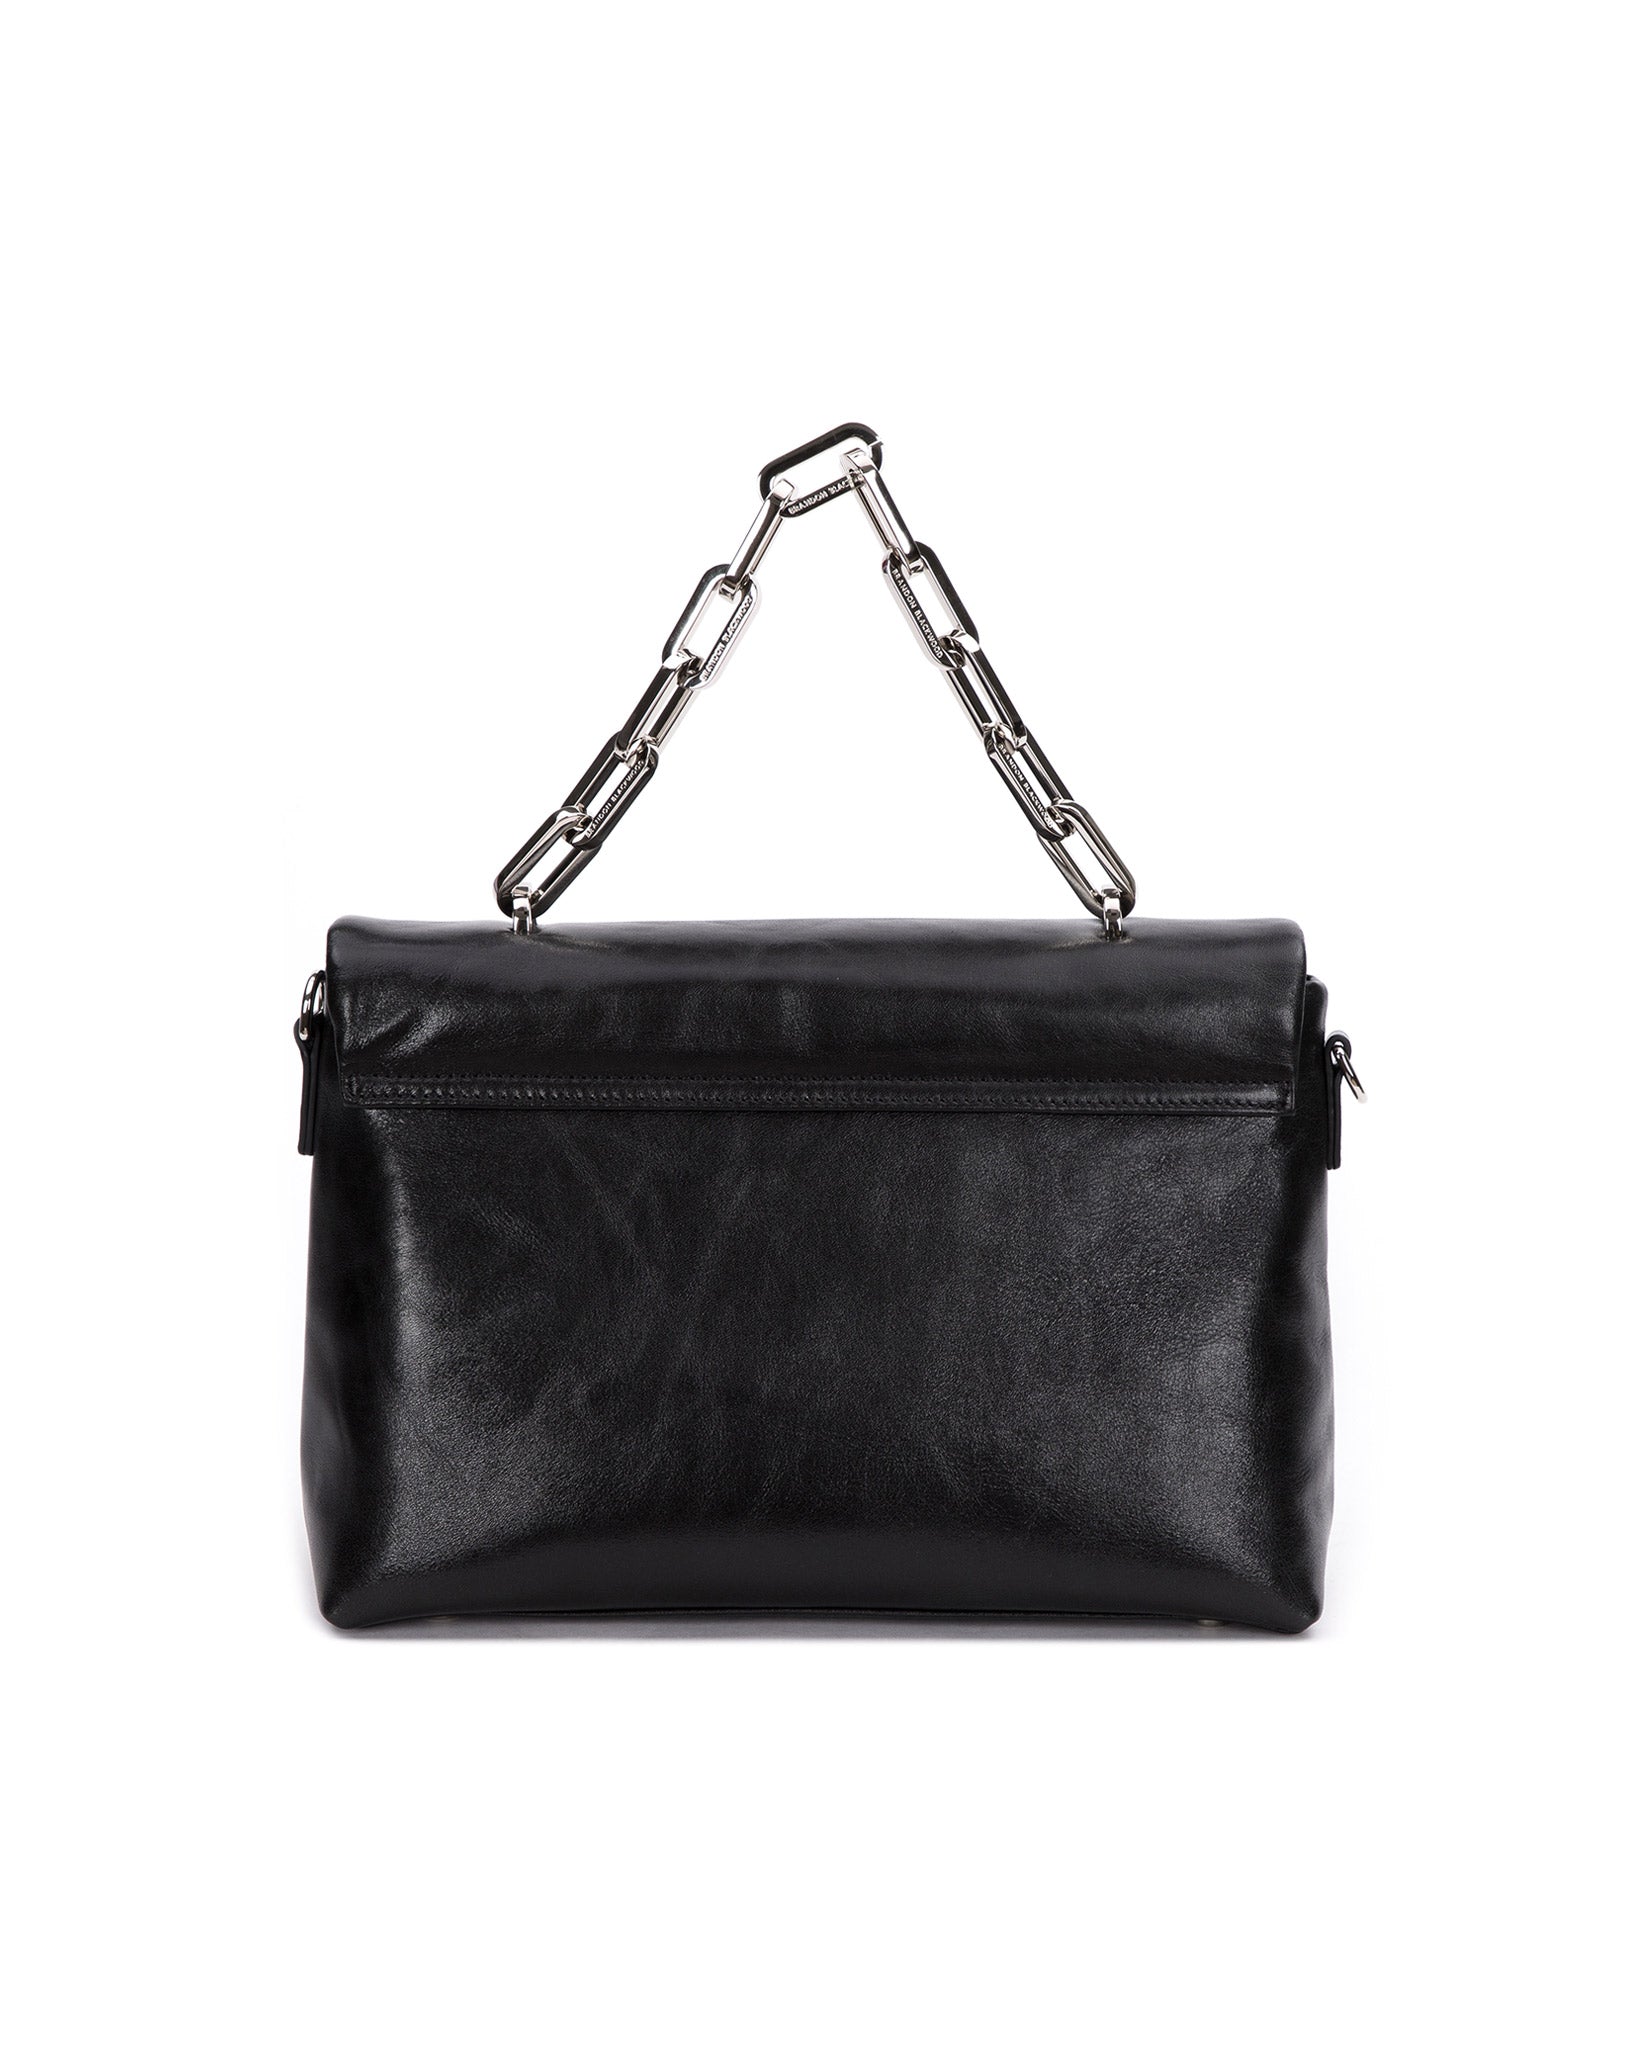 Brandon Blackwood New York - Lisa Shoulder Bag - Black Cracked Leather w/ Silver Hardware